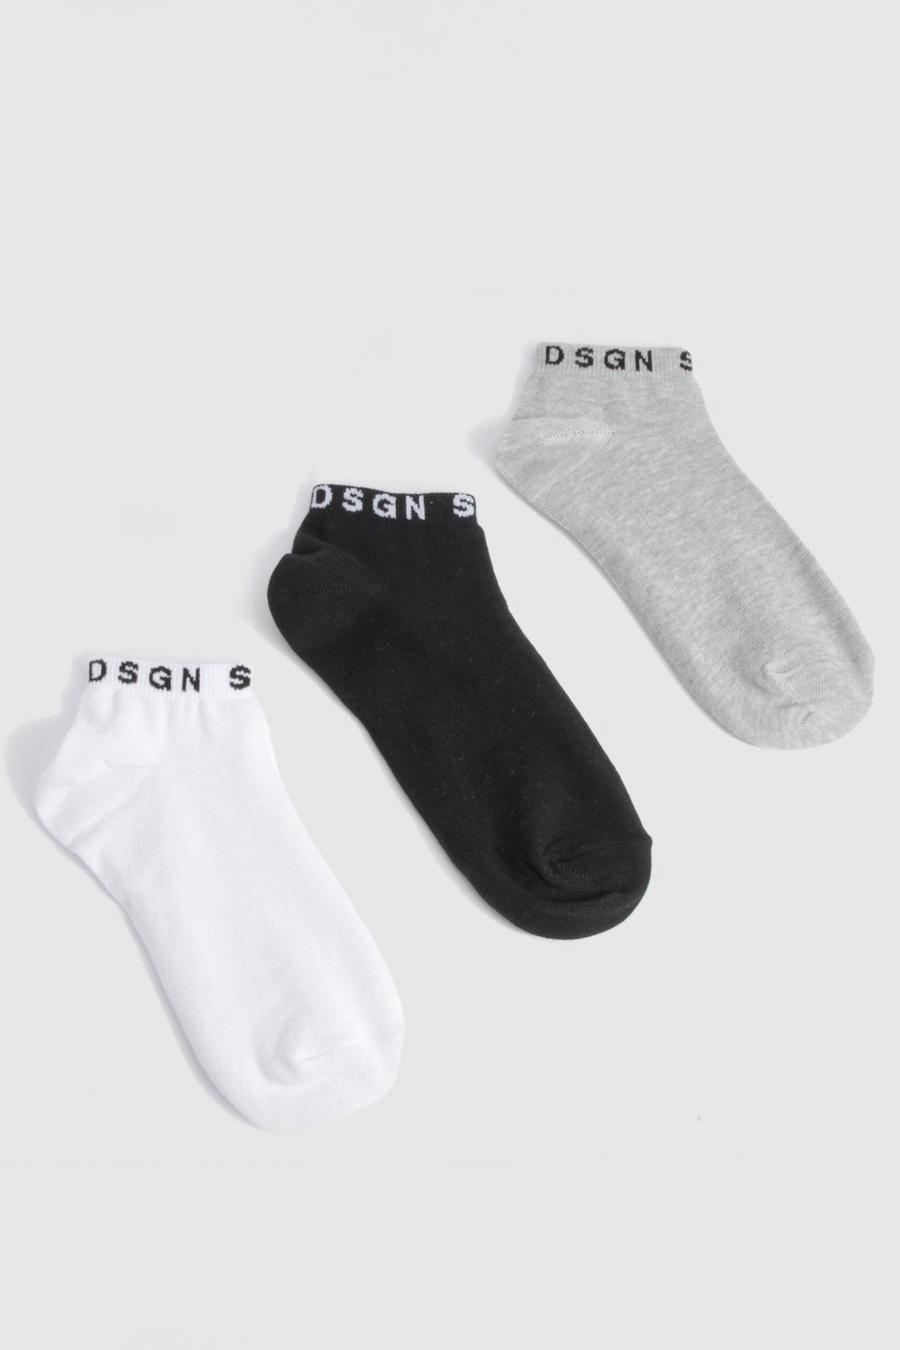 Dsgn Studio 3 Pack Multi Trainer Socks 